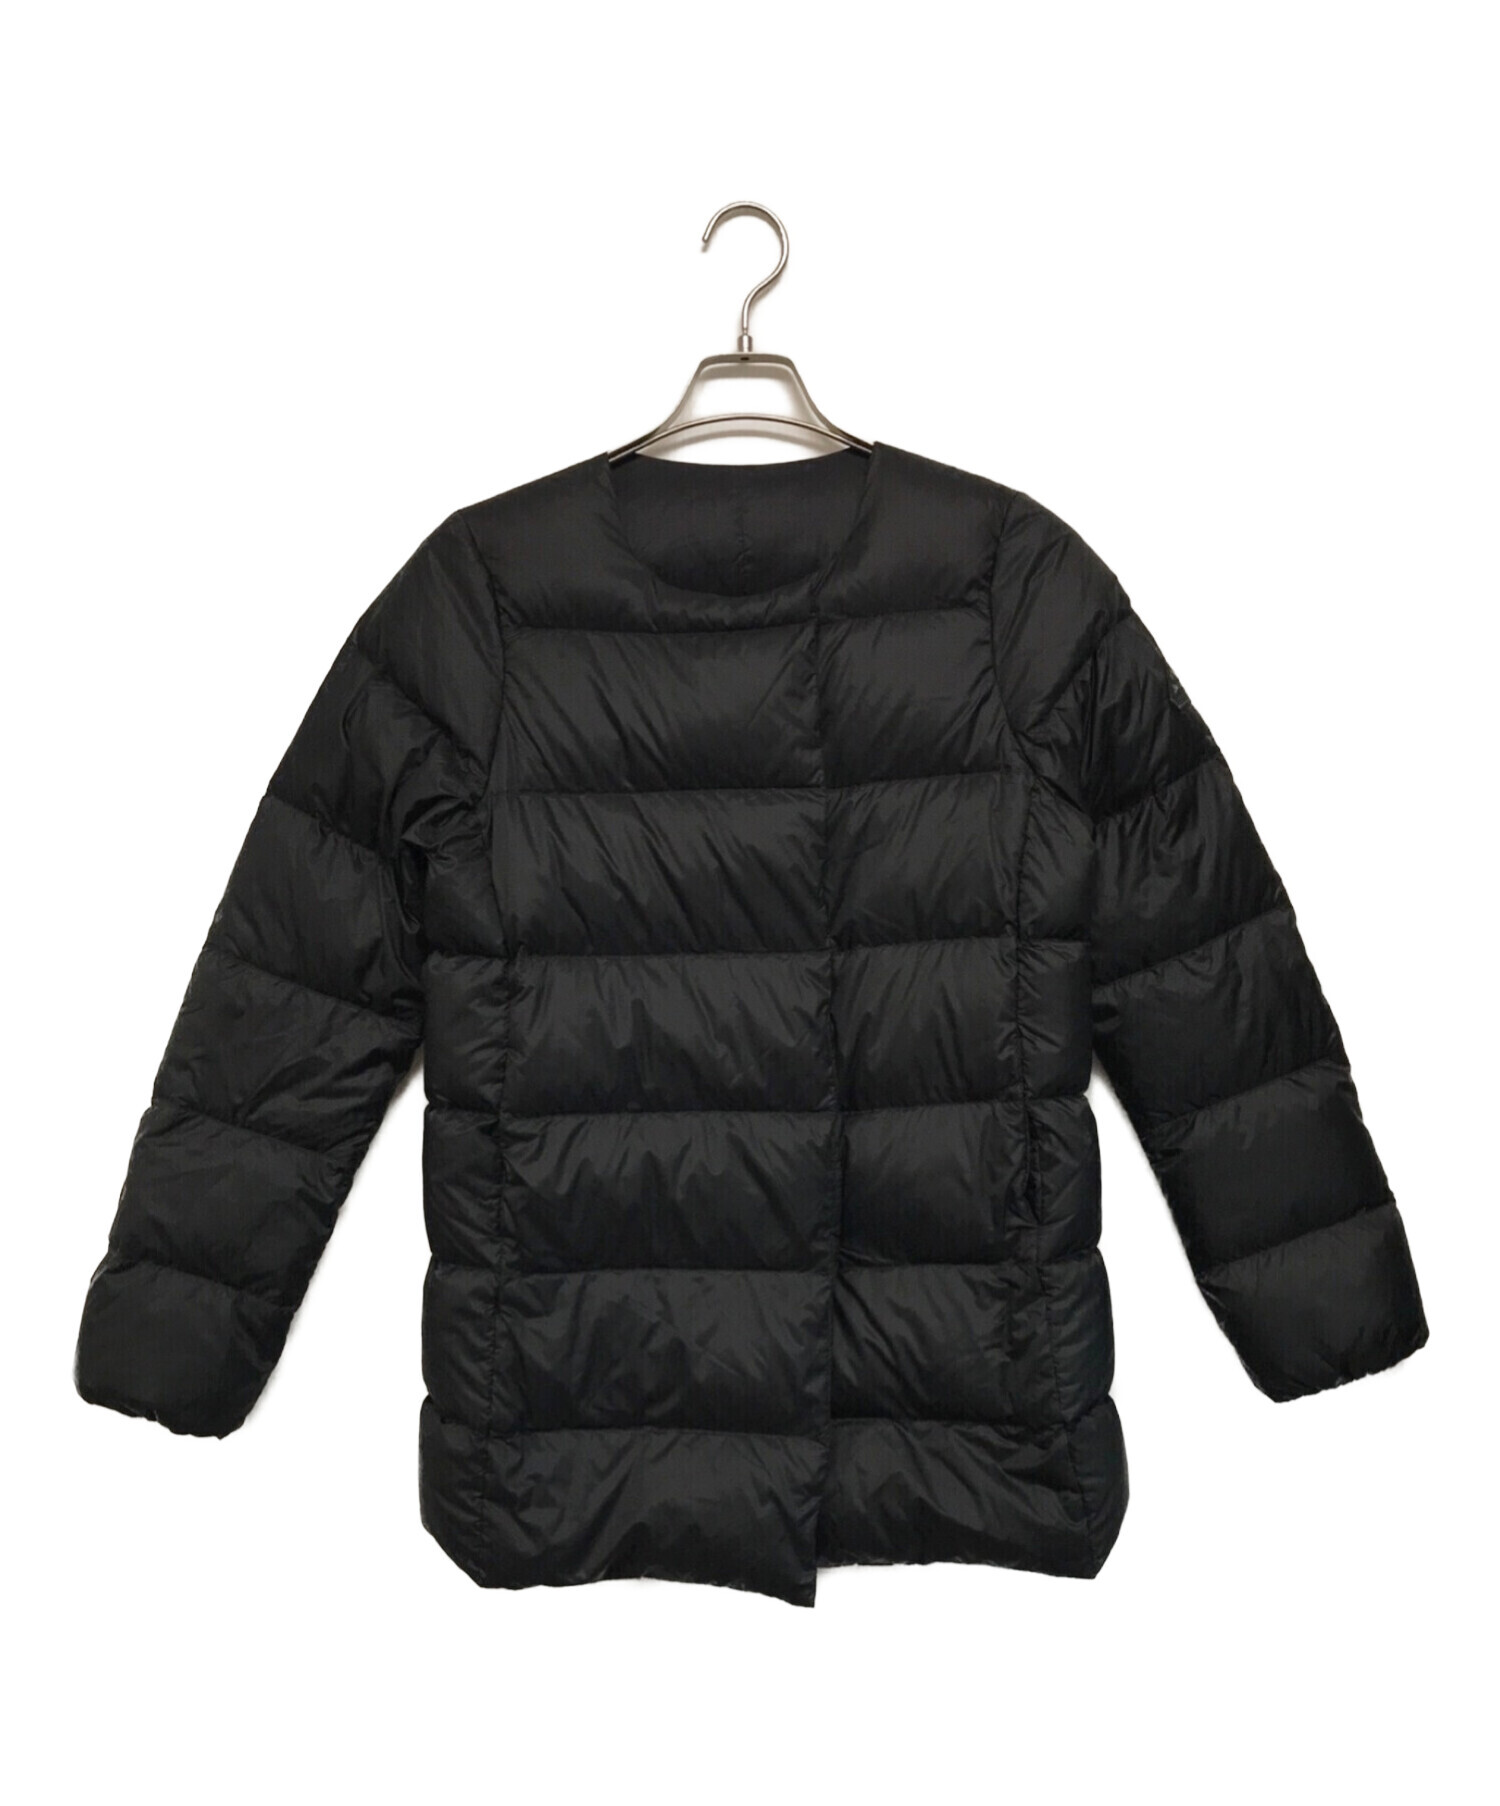 Pyrenex (ピレネックス) COCOONダウンジャケット ブラック サイズ:38